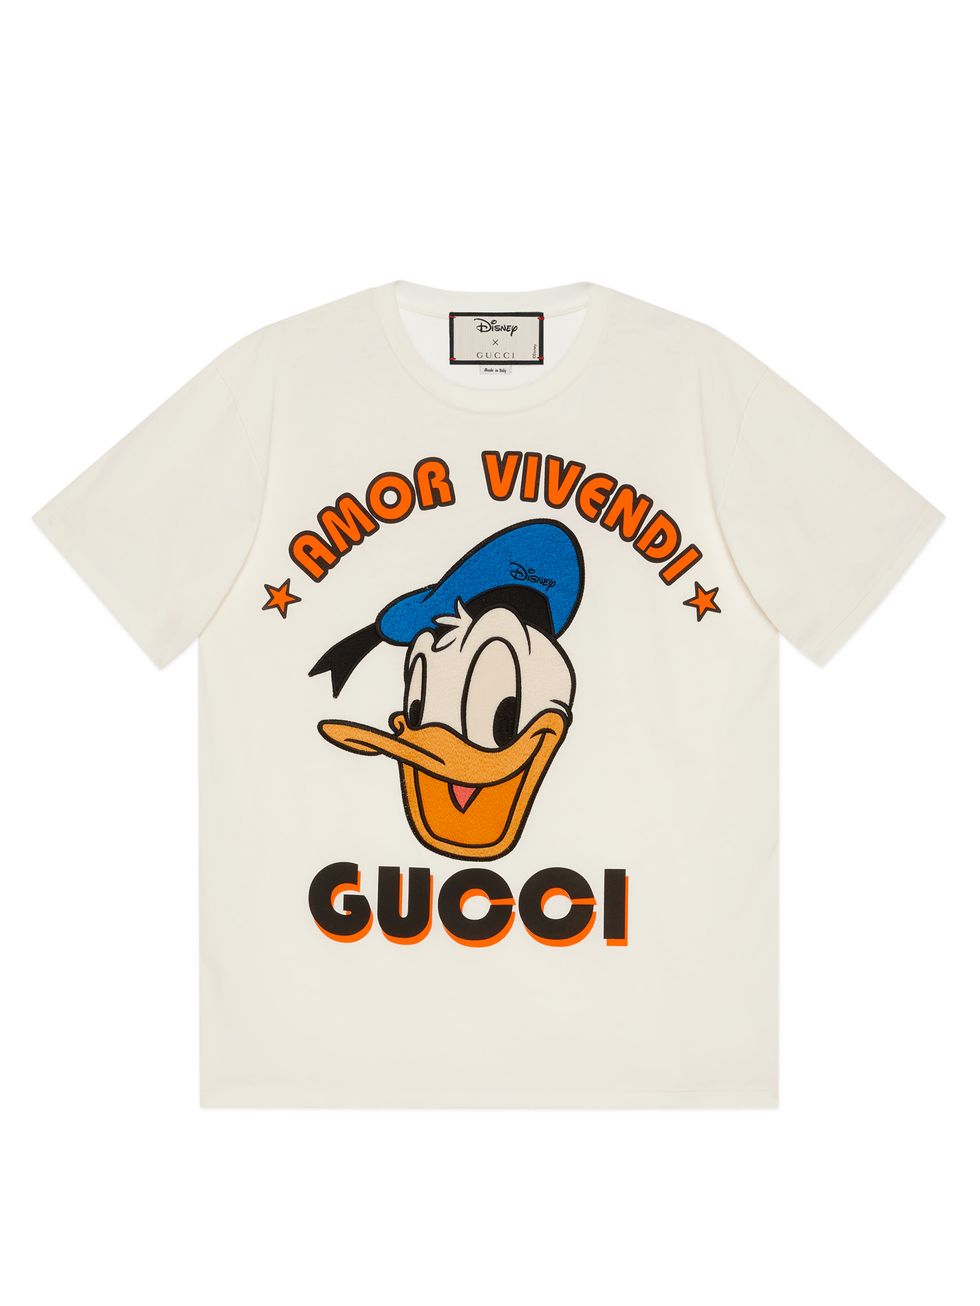 gucci與迪士尼唐老鴨最新聯名服裝